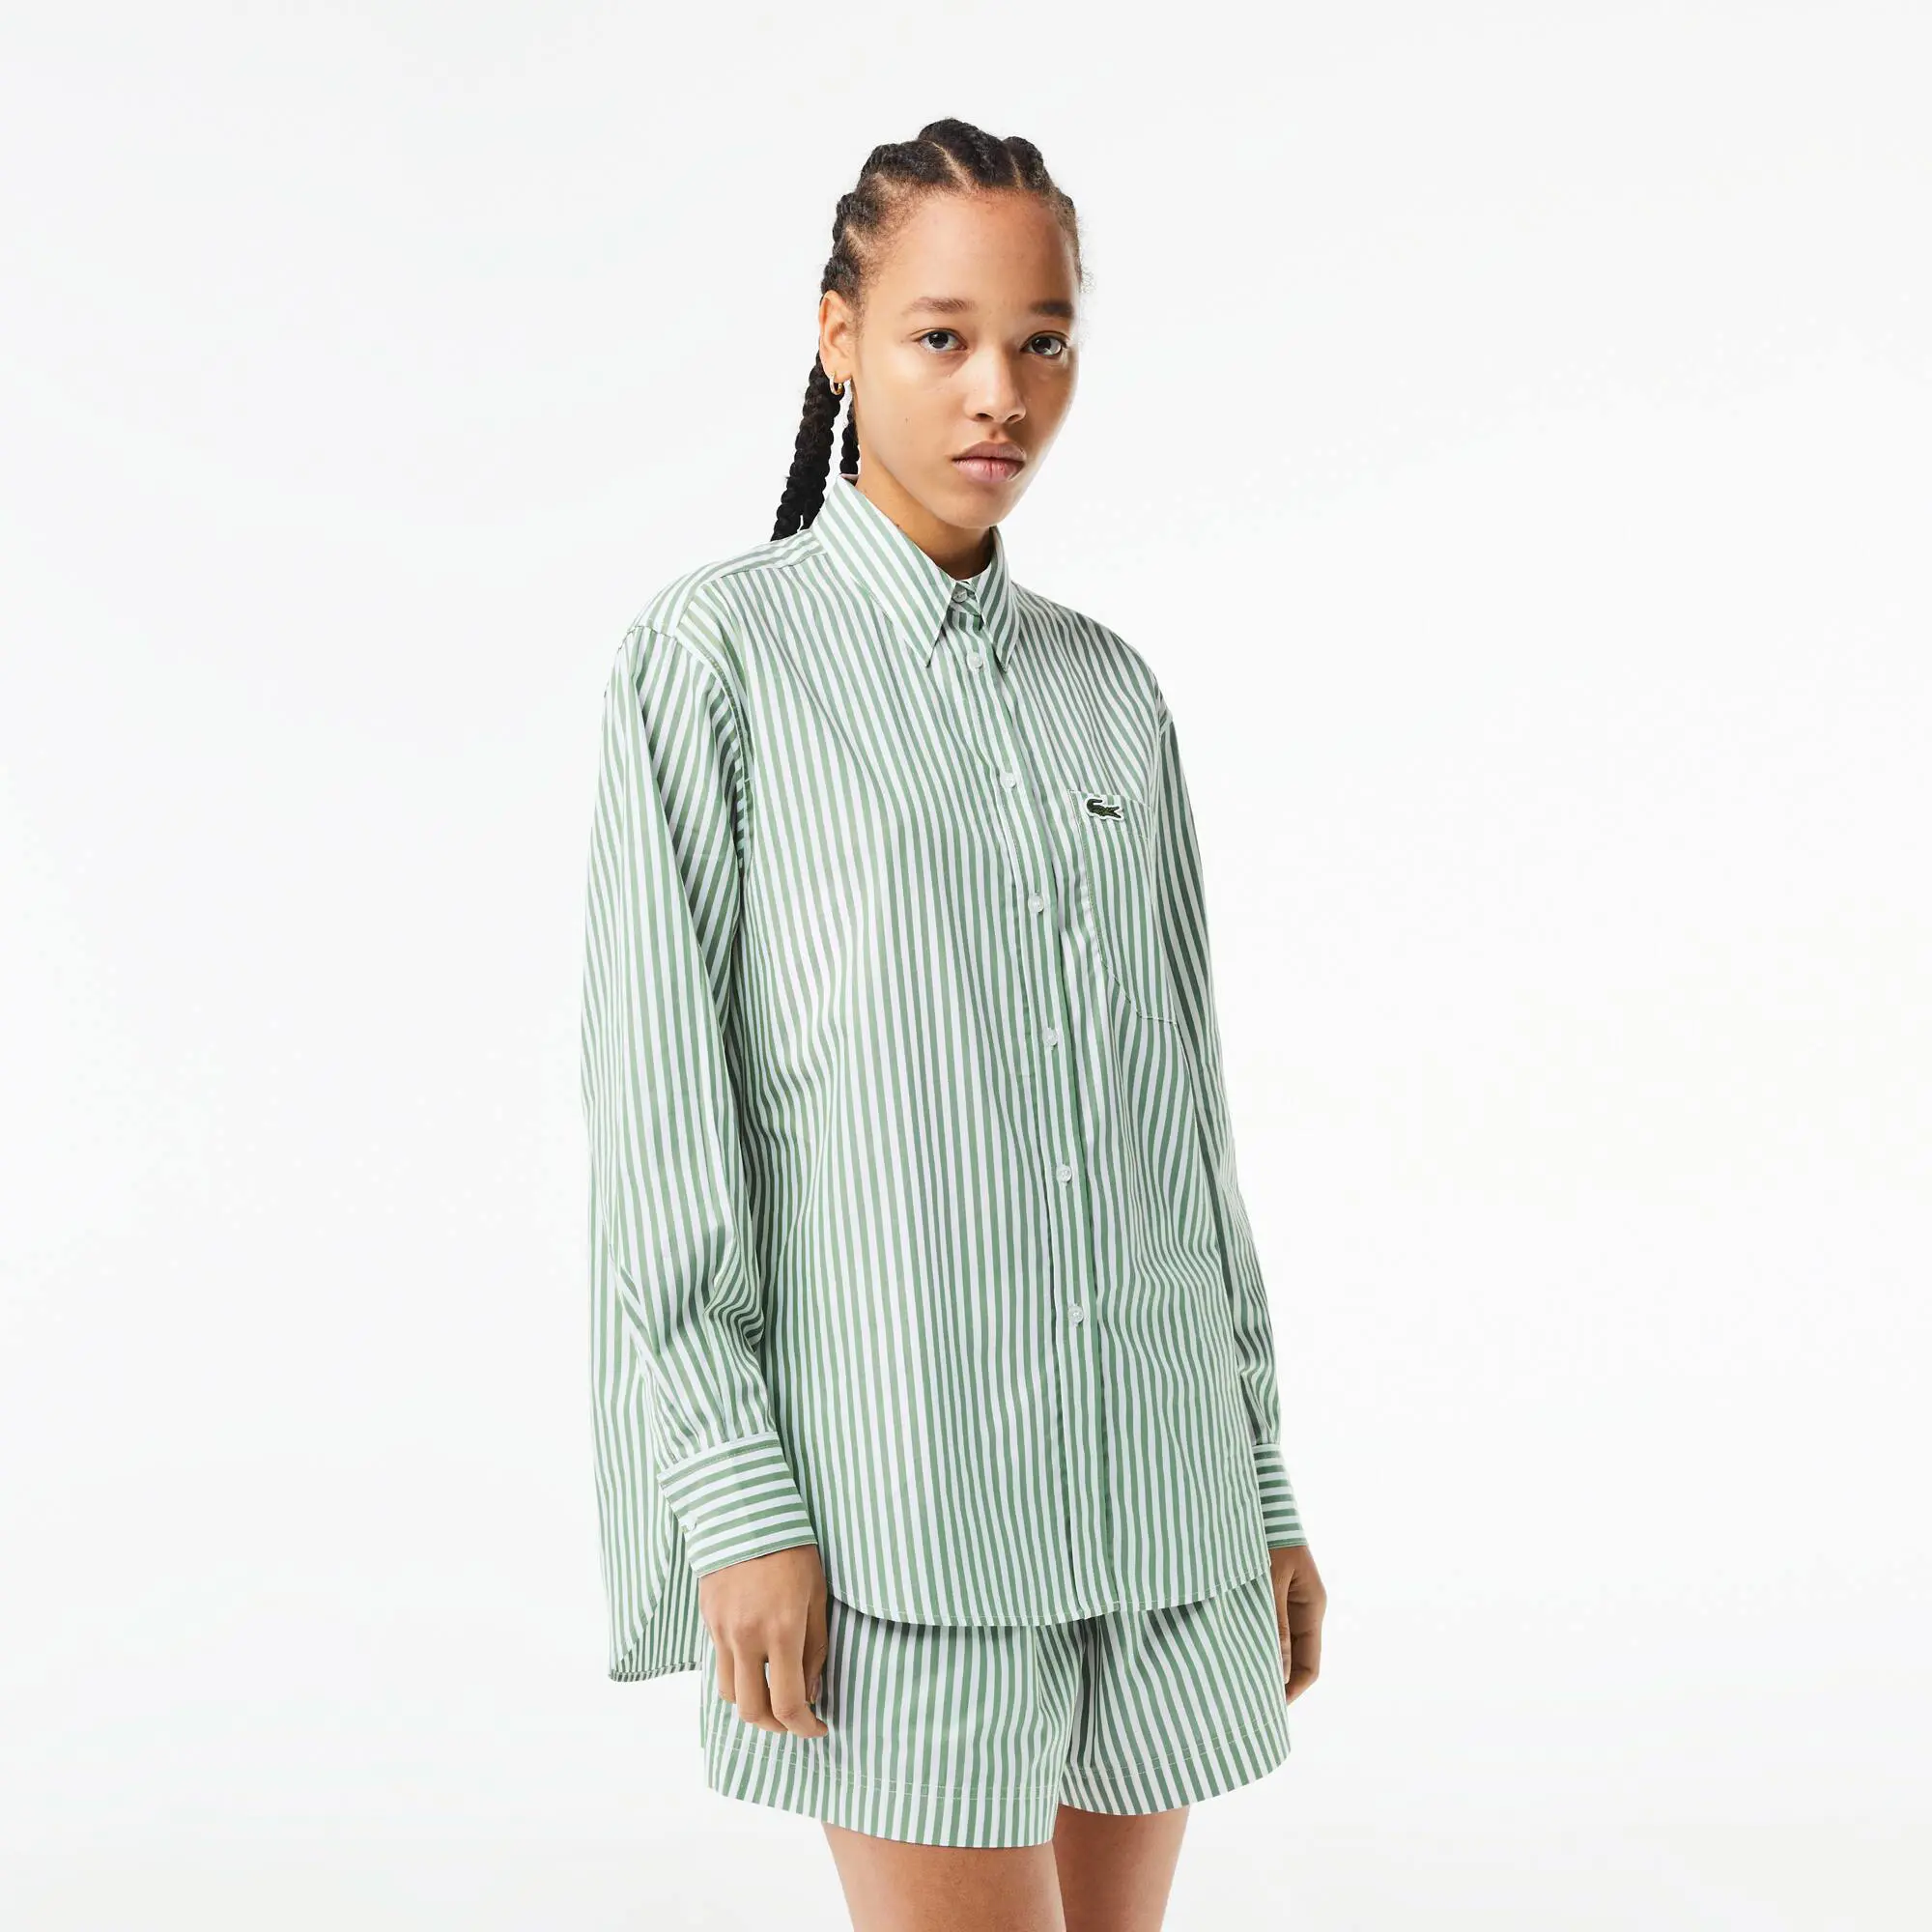 Lacoste Women’s Striped Cotton Poplin Shirt. 1